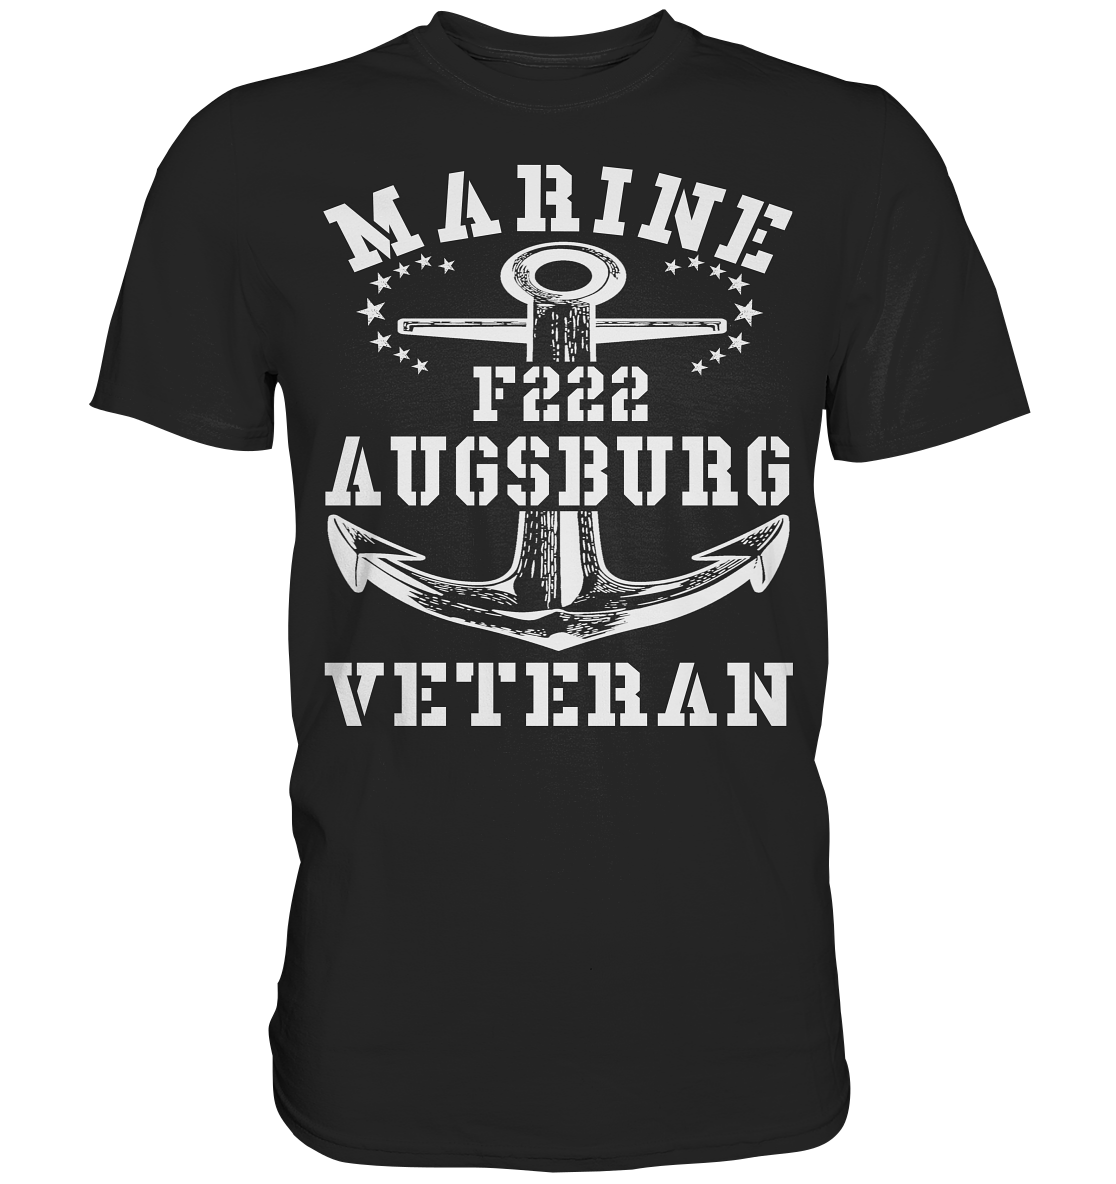 MV Fregatte F222 AUGSBURG - Premium Shirt